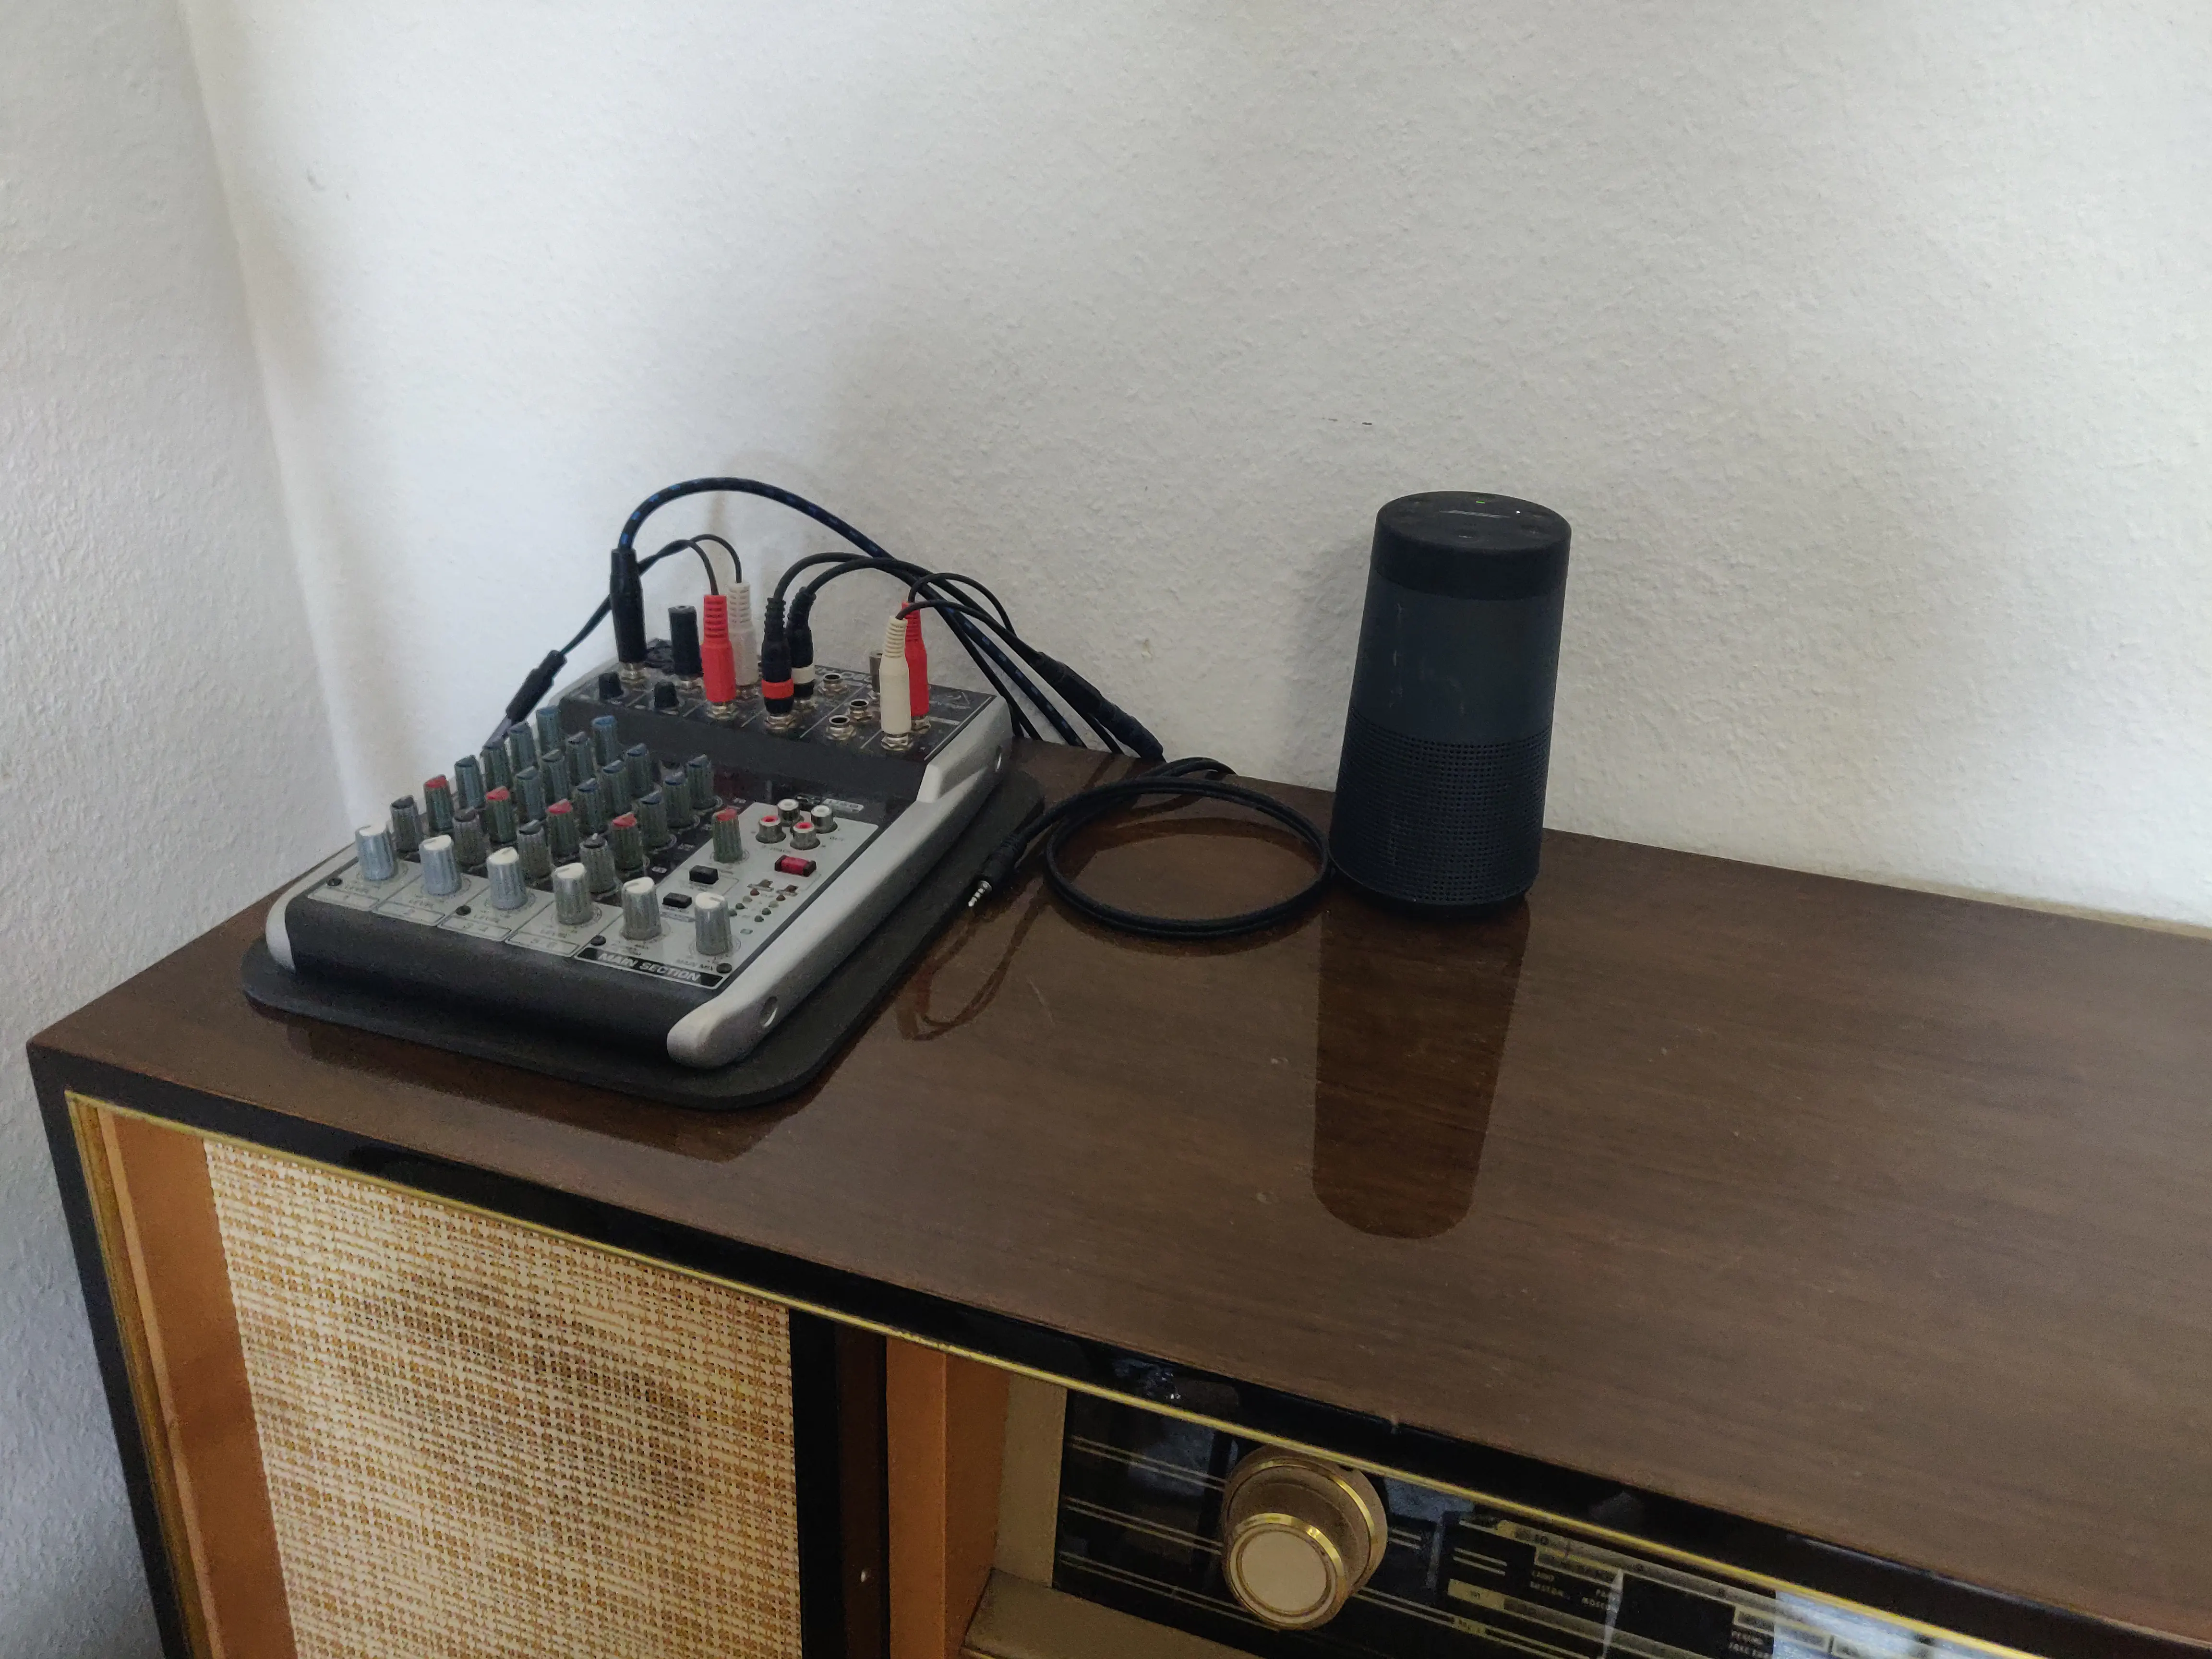 Bose Soundlink Revolve als Lautsprecher für den Raspberry Pi